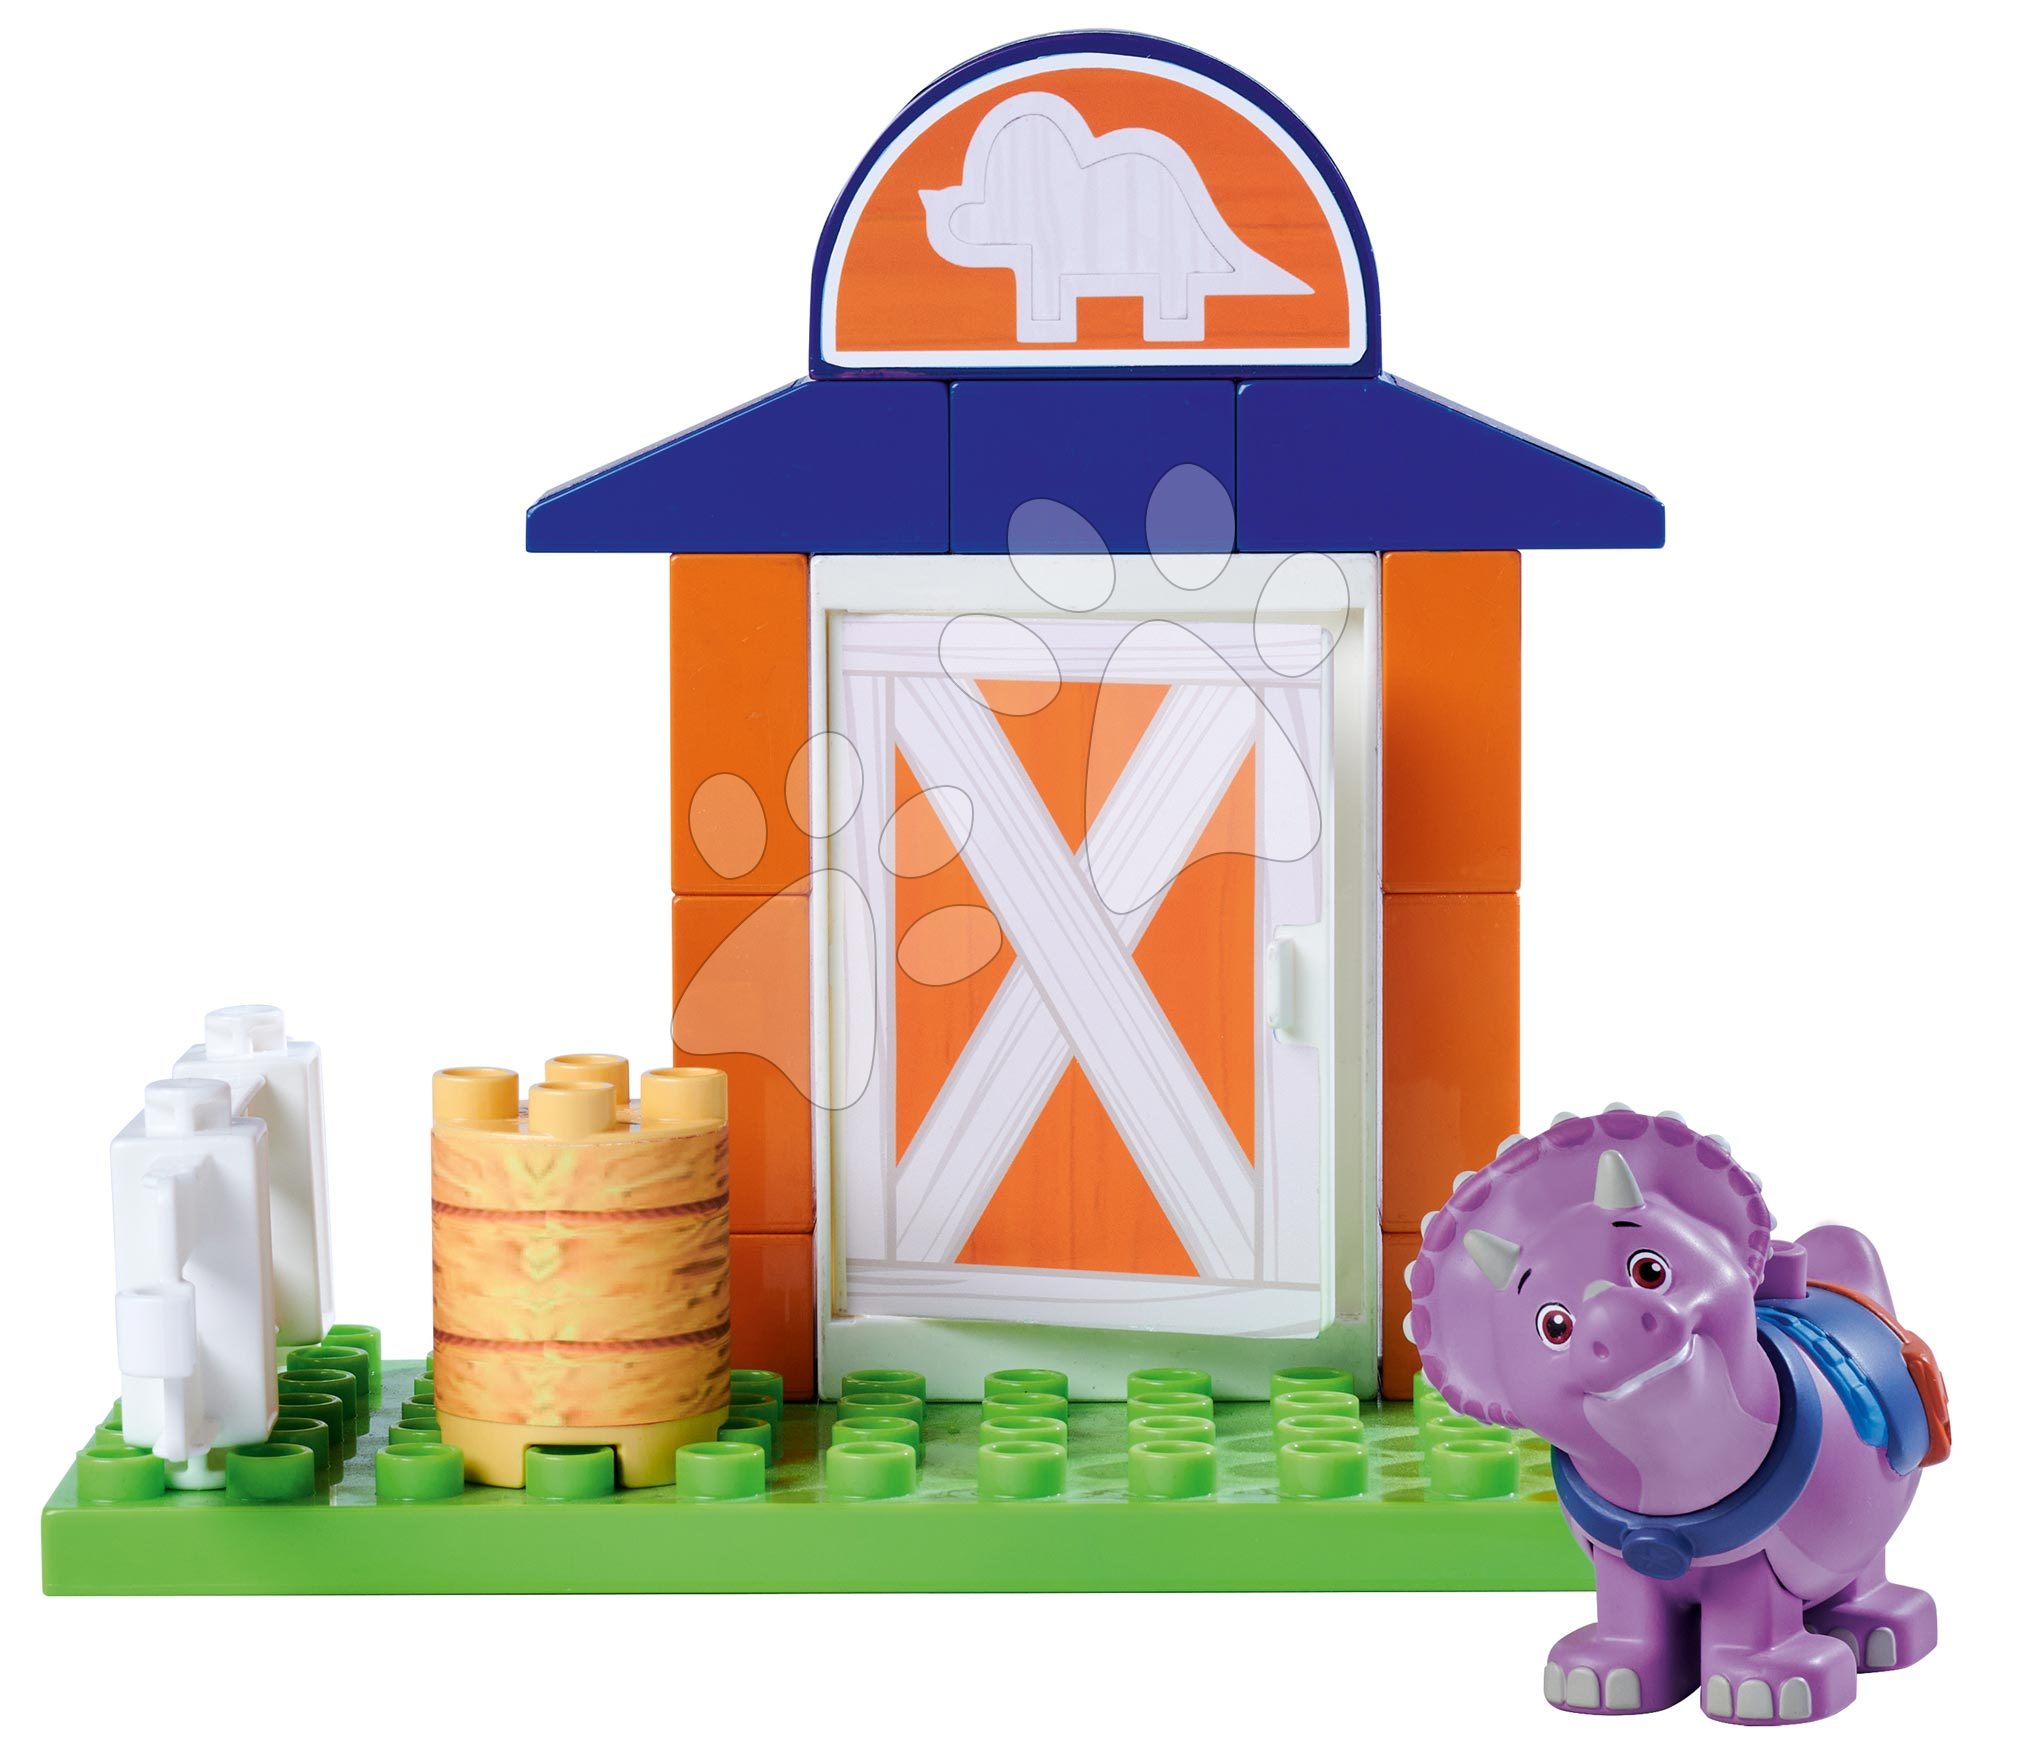 Építőjáték Dino Ranch Tango Basic Set PlayBig Bloxx BIG dínó figurával istállóban 16 darabos 1,5-5 éves korosztálynak